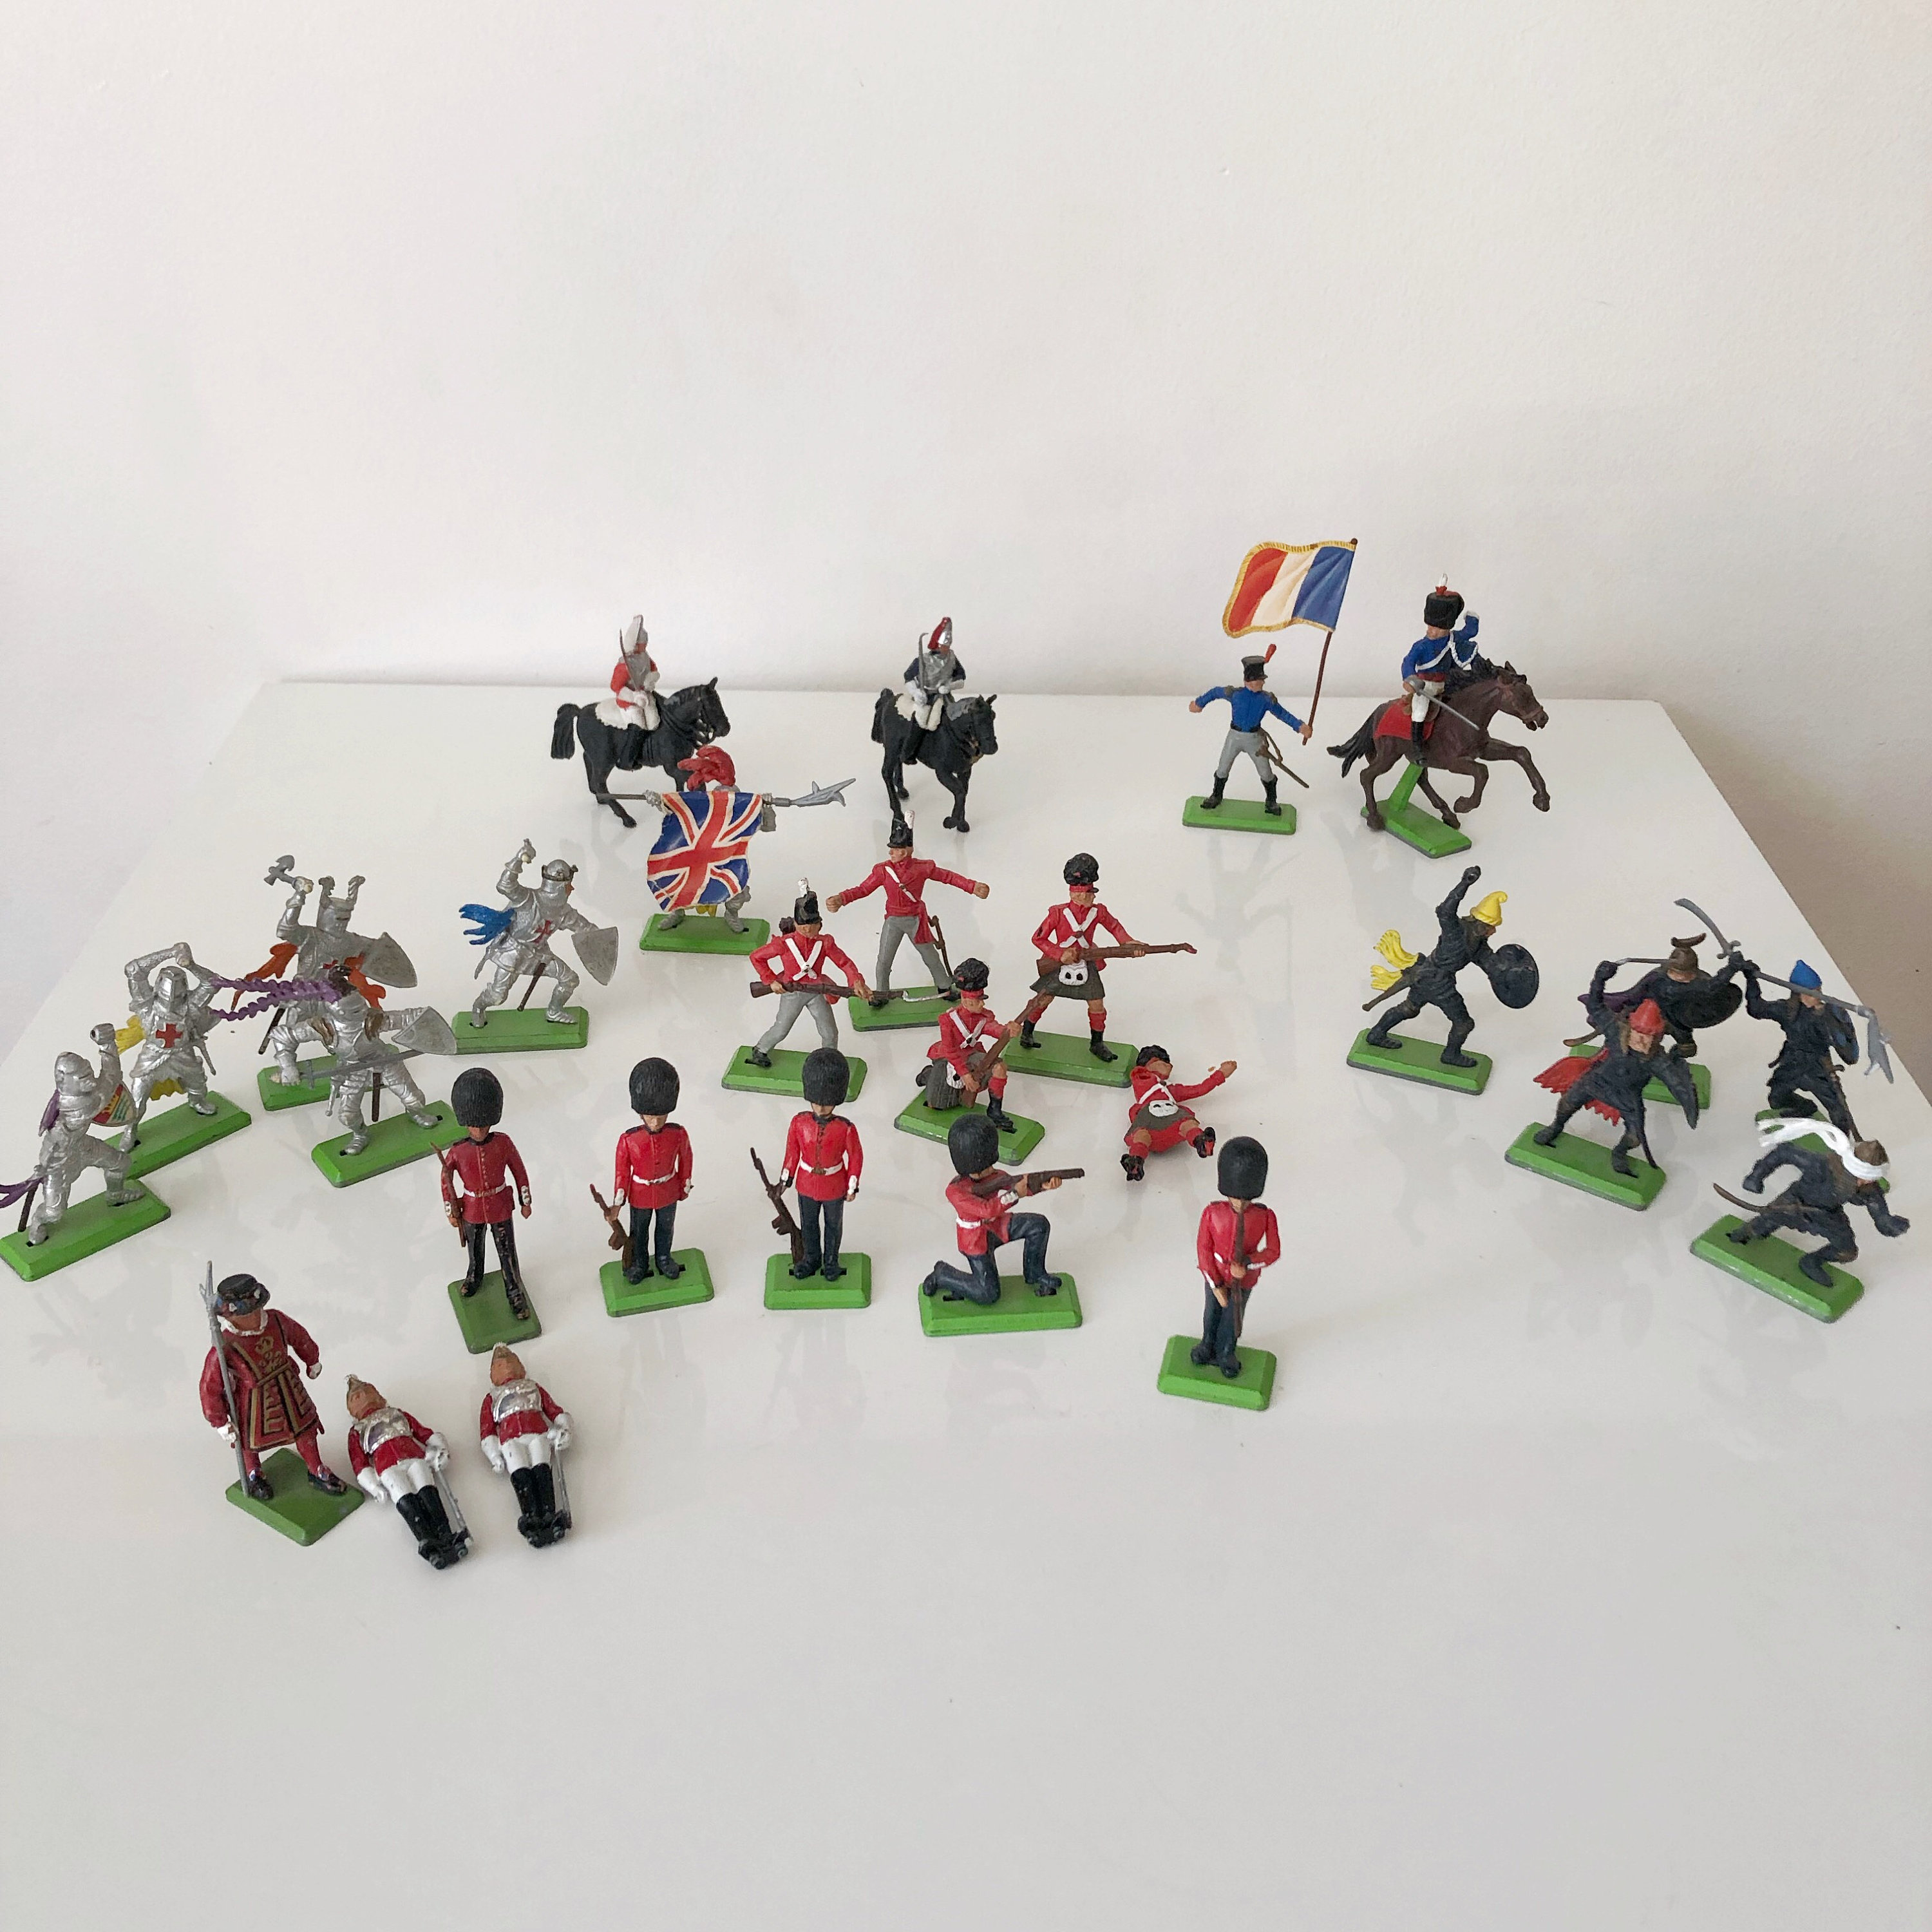 Hpory Soldat Militaire Jouet, 300 Pcs Militaire Figurines Set Y Com